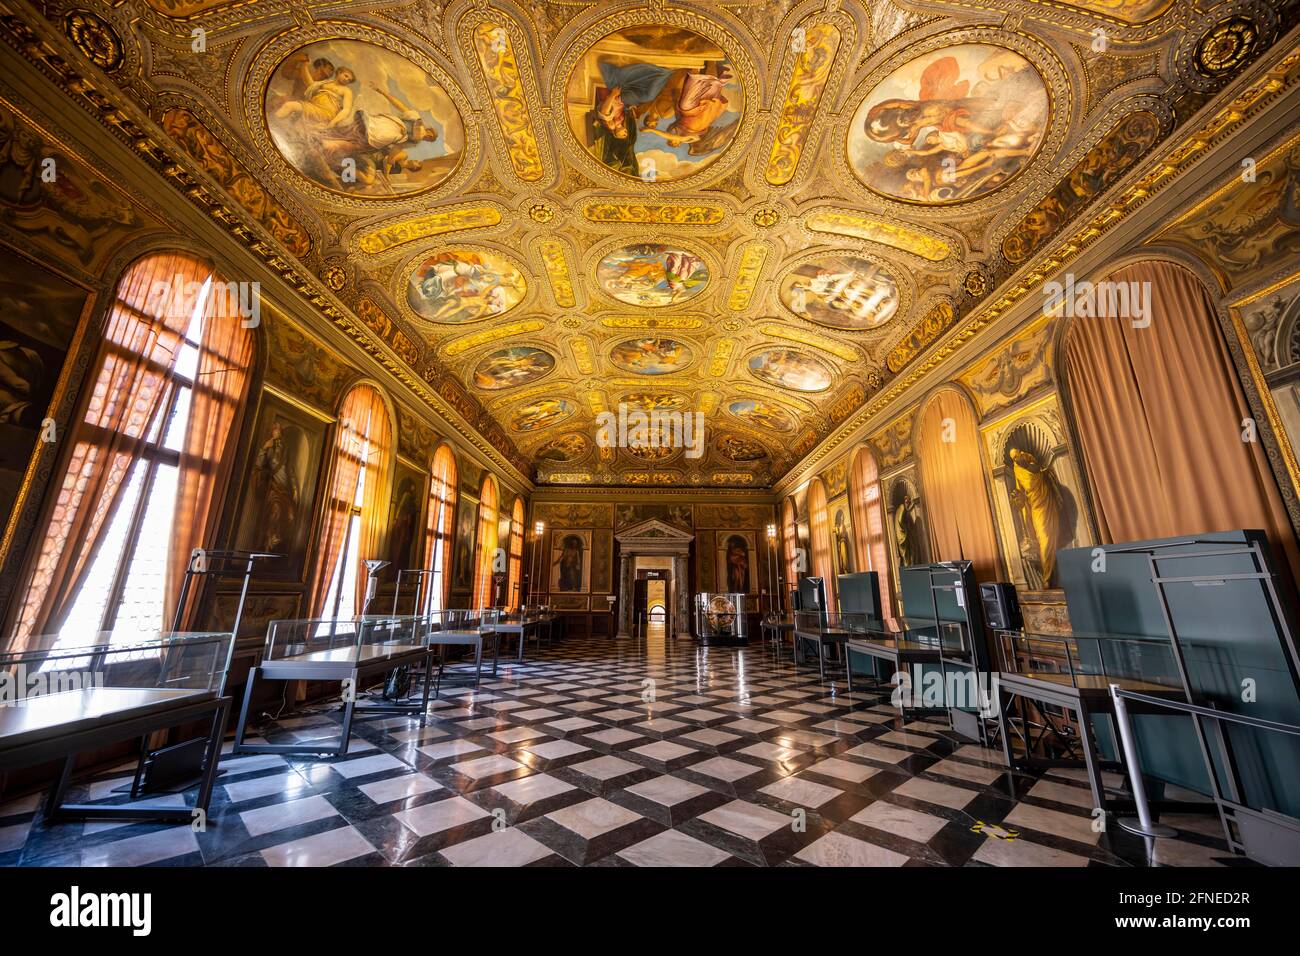 Splendide salle d'exposition avec voûte plafond ornée, Museo Correr, Venise, Vénétie, Italie Banque D'Images